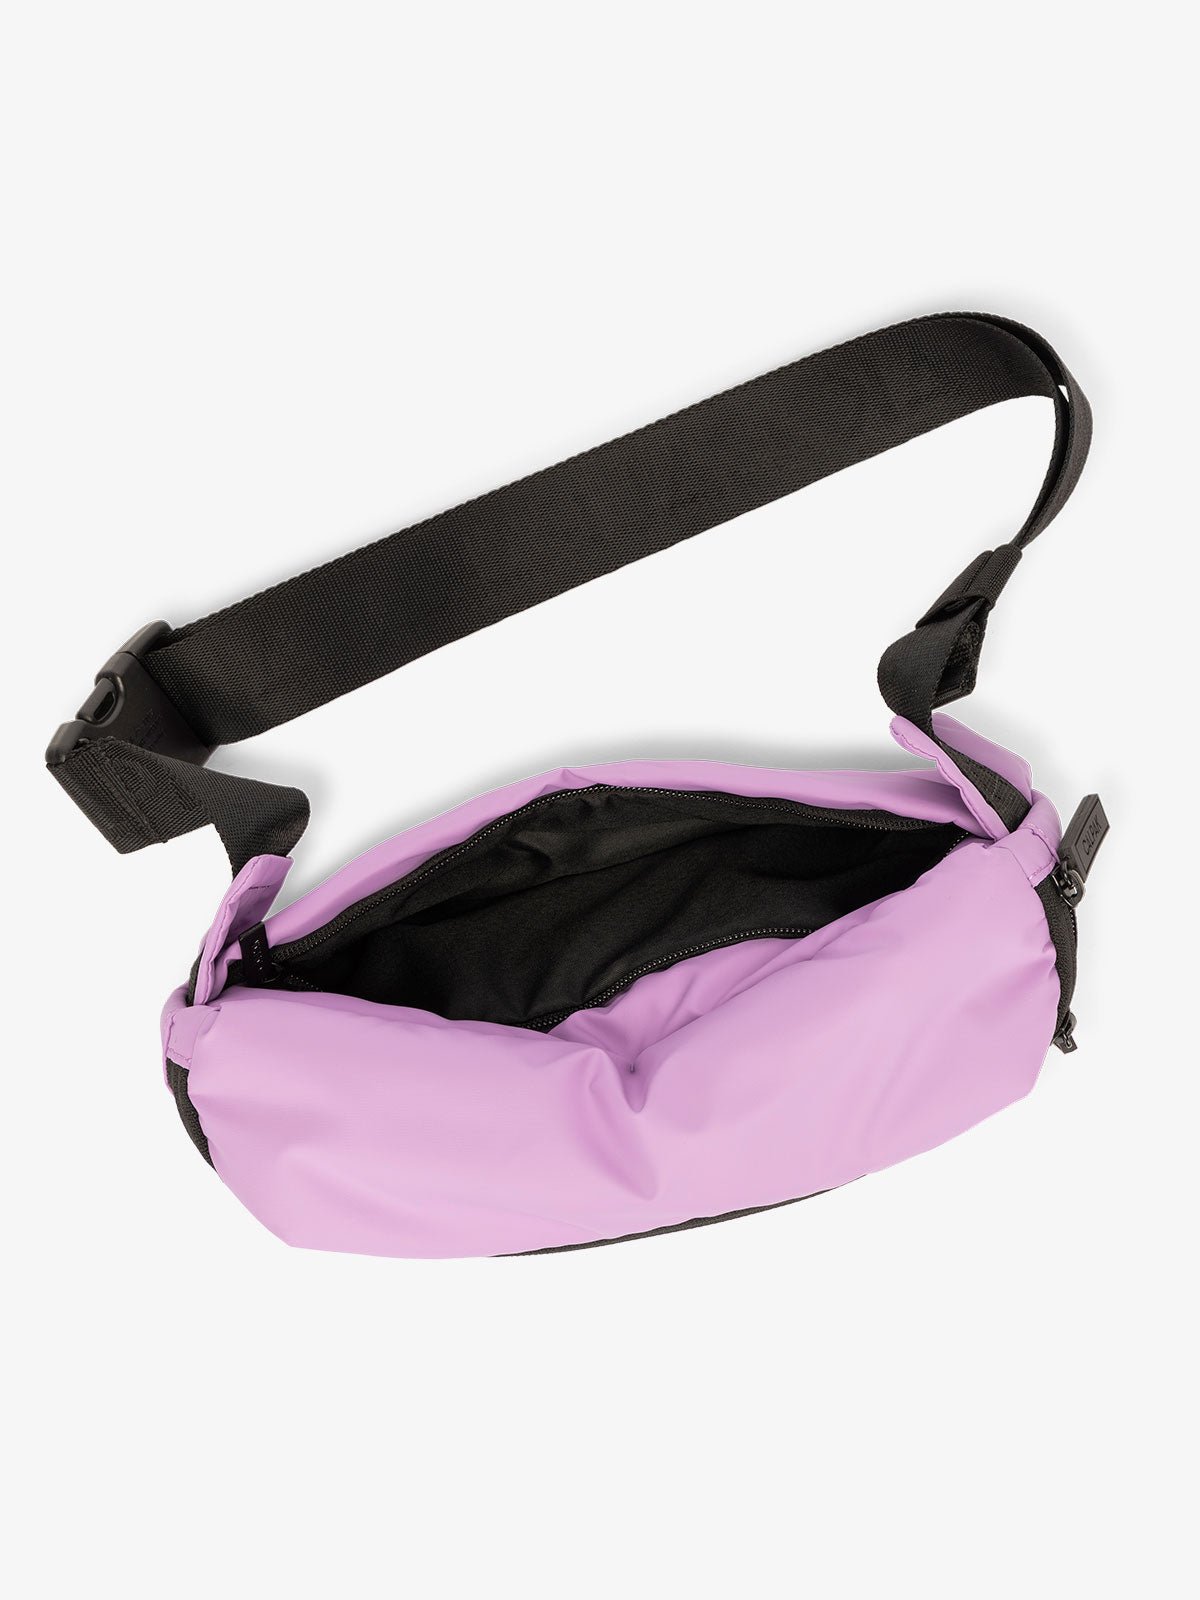 CALPAK Luka Belt Bag with adjustable strap and hidden back pocket in lilac pink